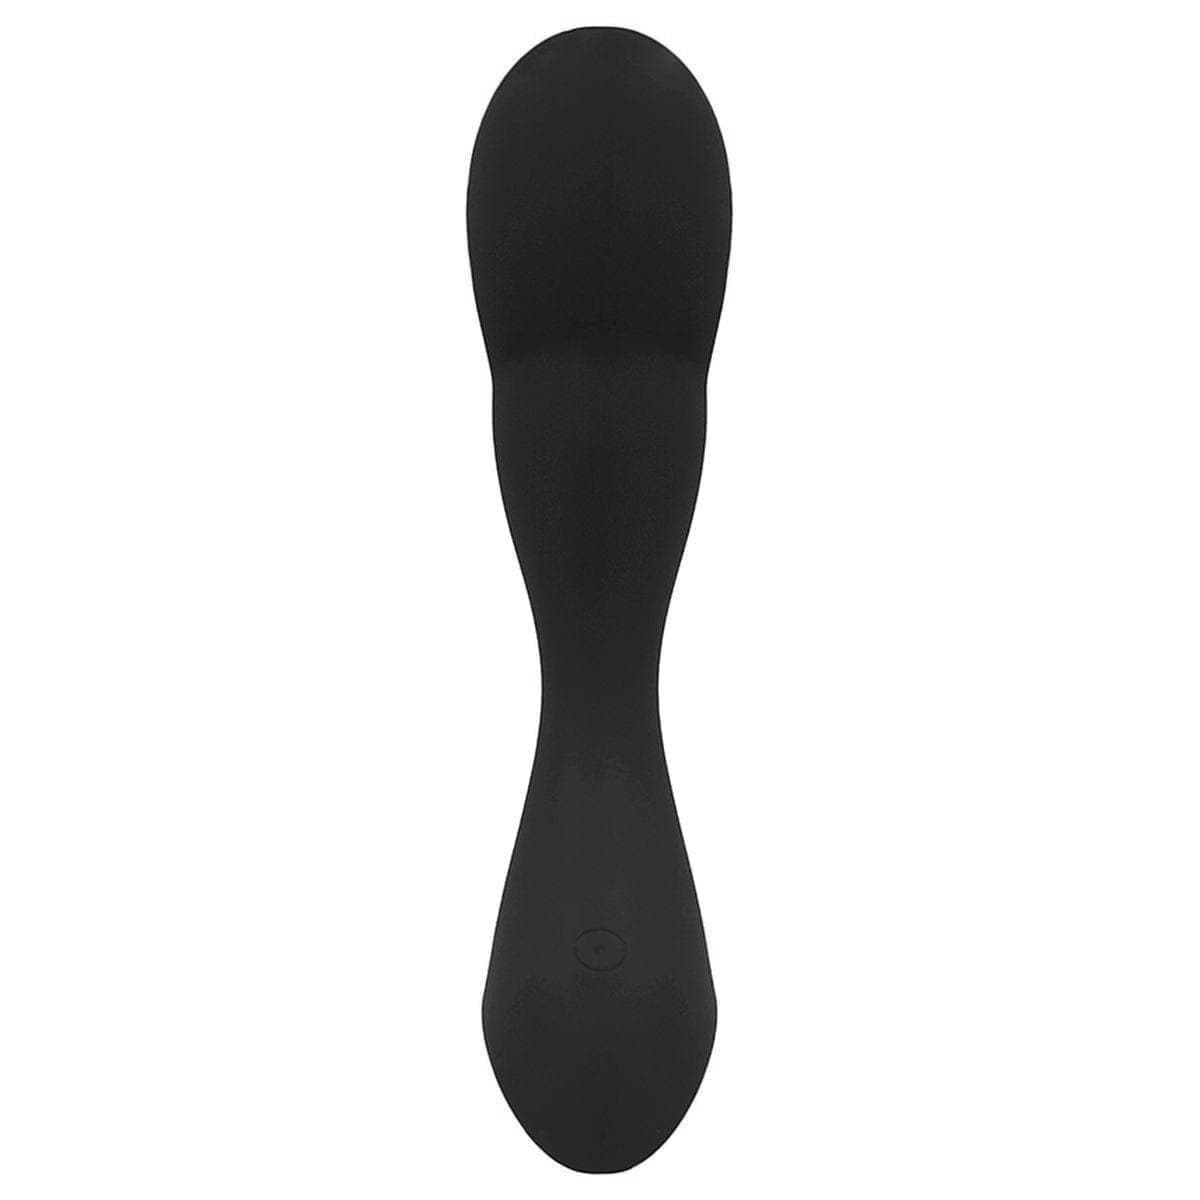 Estimulador Próstata Geron Simplicity, 12cm Ø3cm, 10vibrações - Pérola SexShop